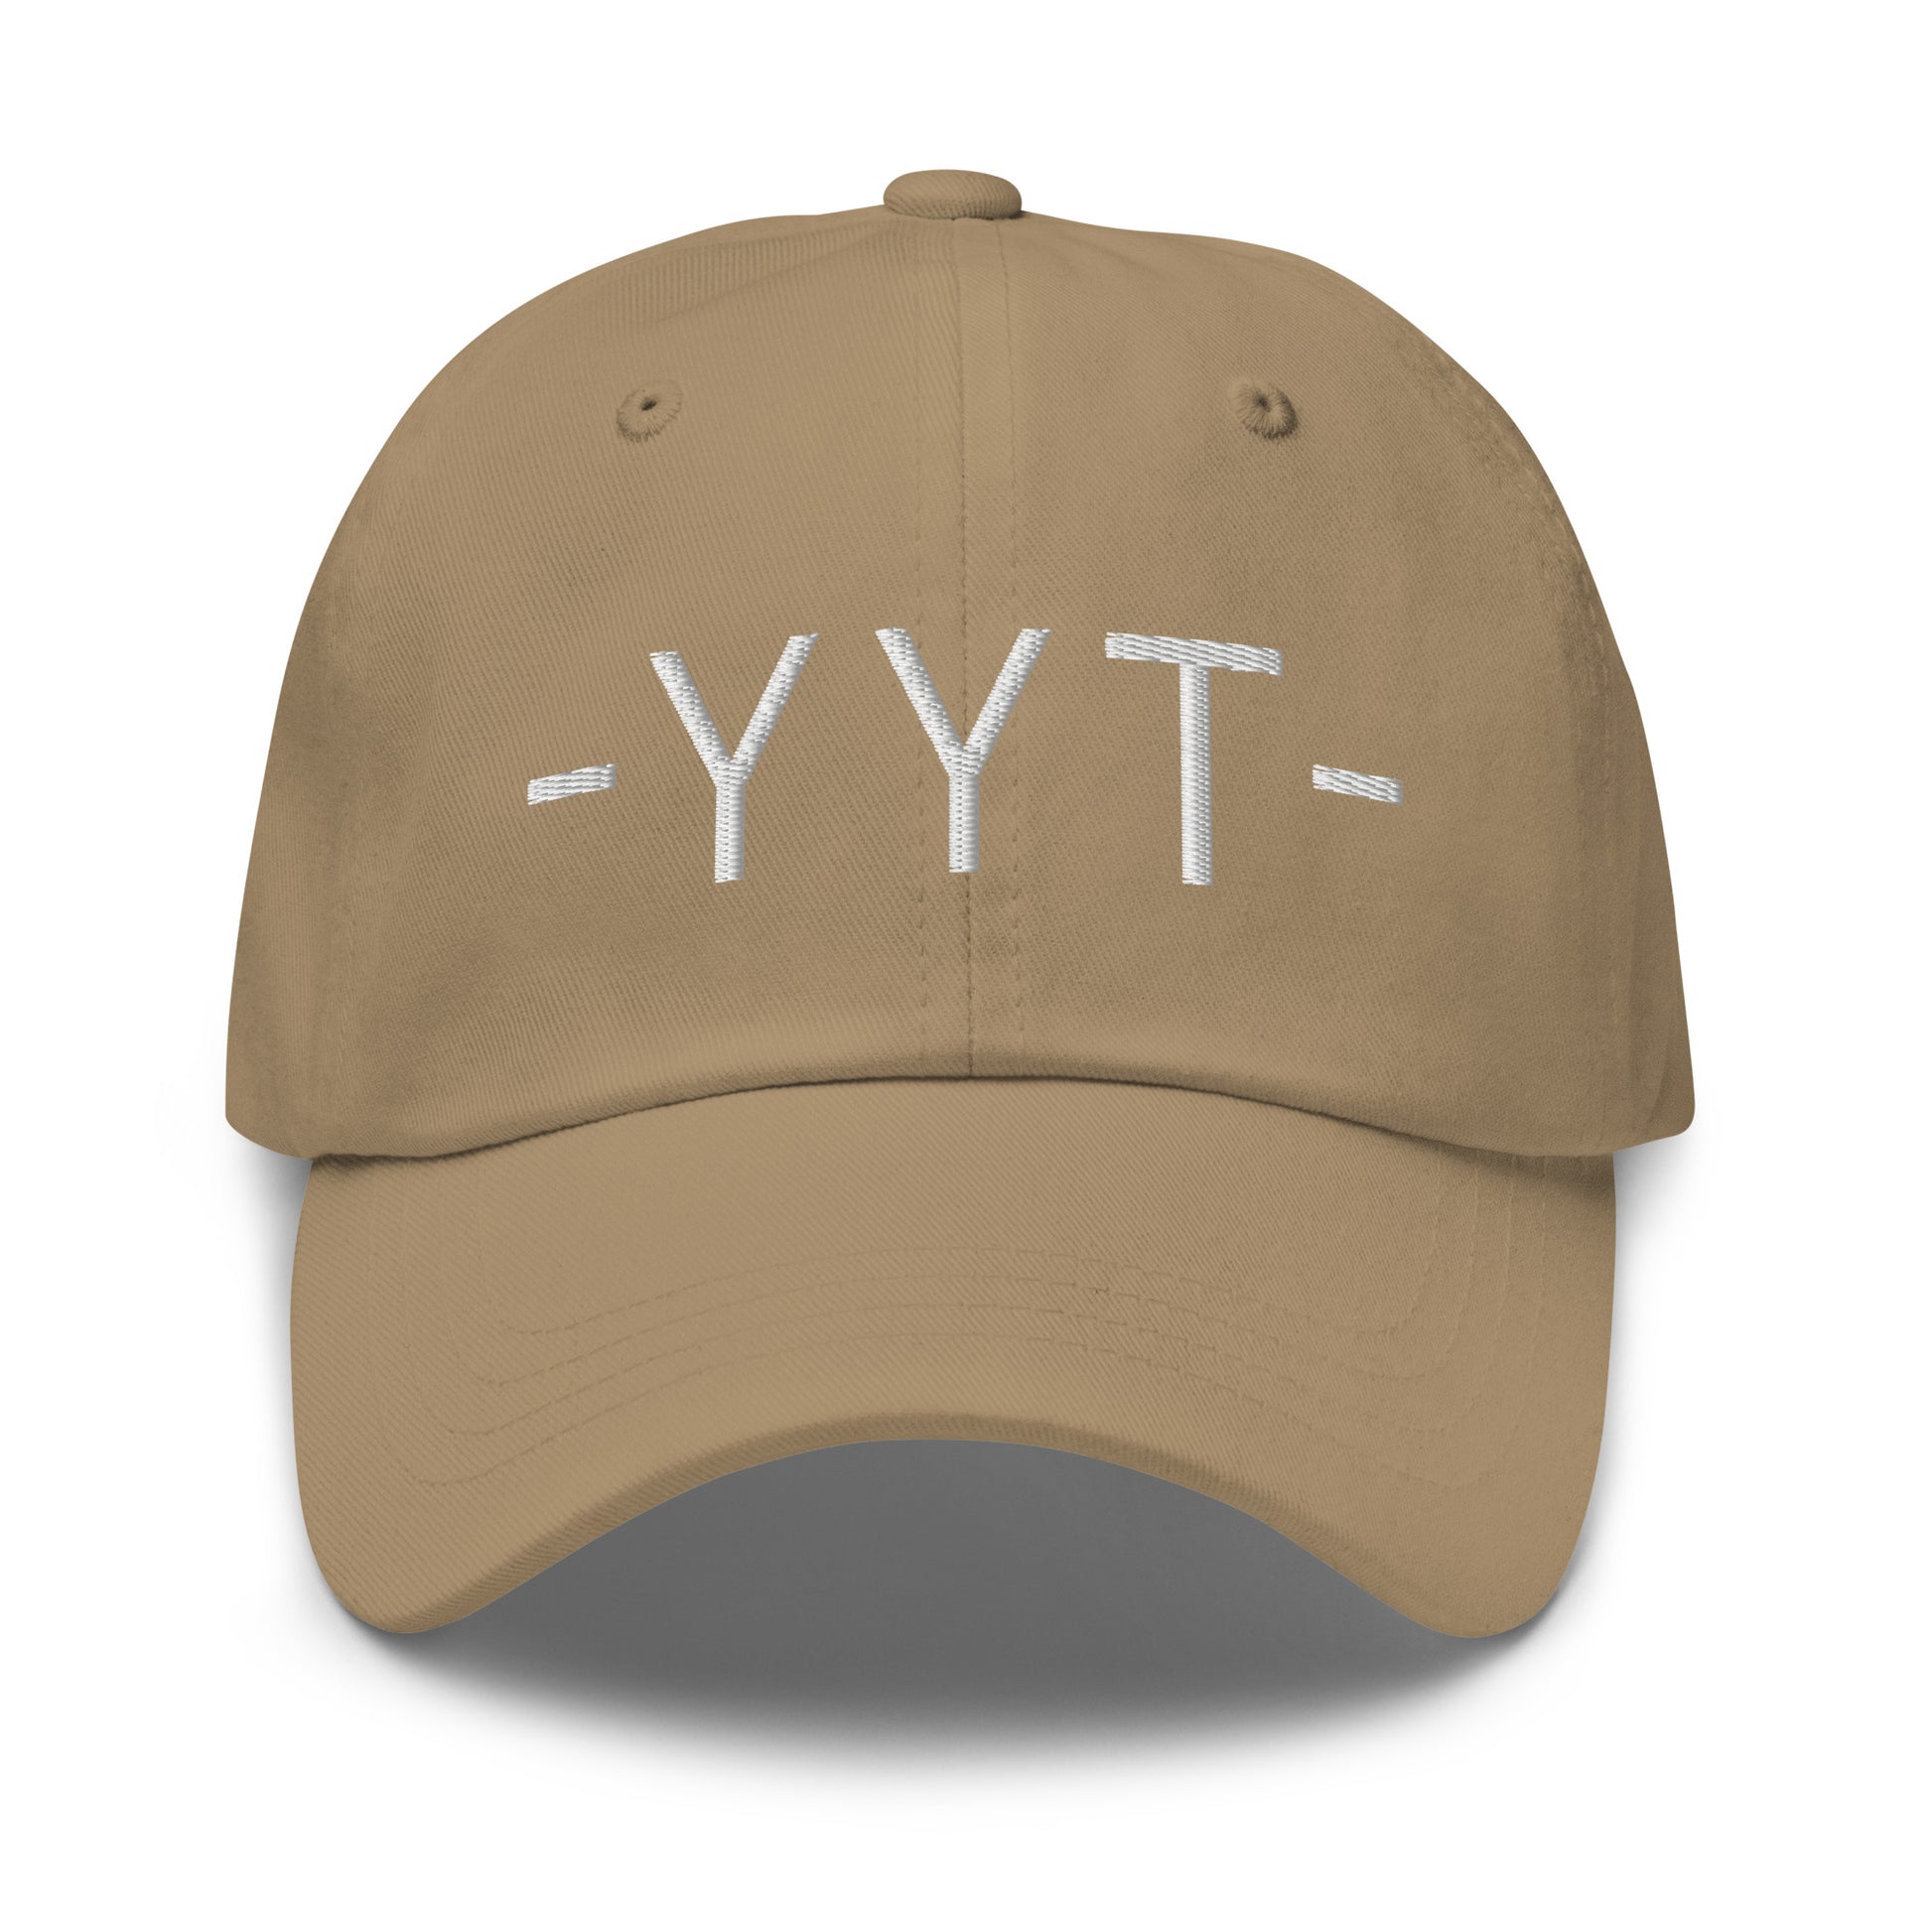 Souvenir Baseball Cap - White • YYT St. John's • YHM Designs - Image 21